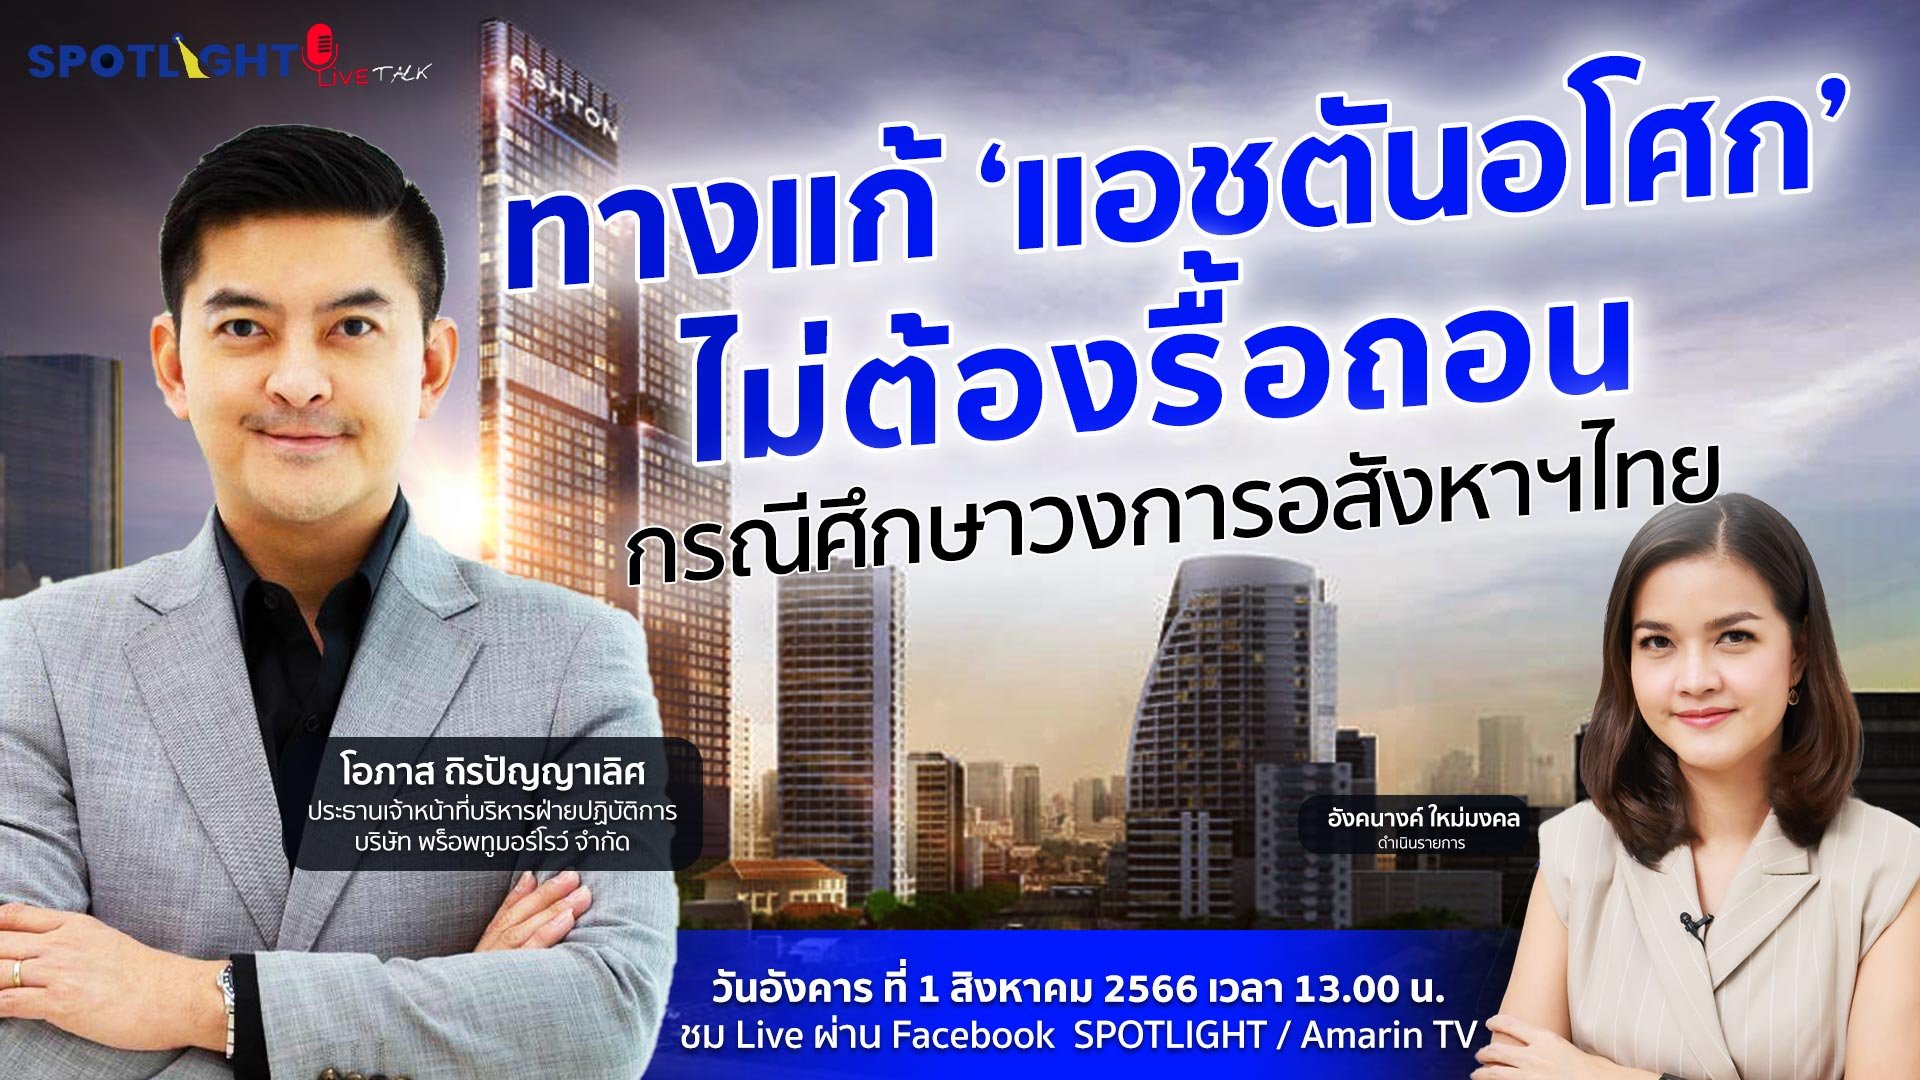 ทางแก้ ‘แอชตันอโศก’ ไม่ต้องรื้อถอน กรณีศึกษาวงการอสังหาฯไทย | Spotlight | 1 ส.ค. 66 | AMARIN TVHD34